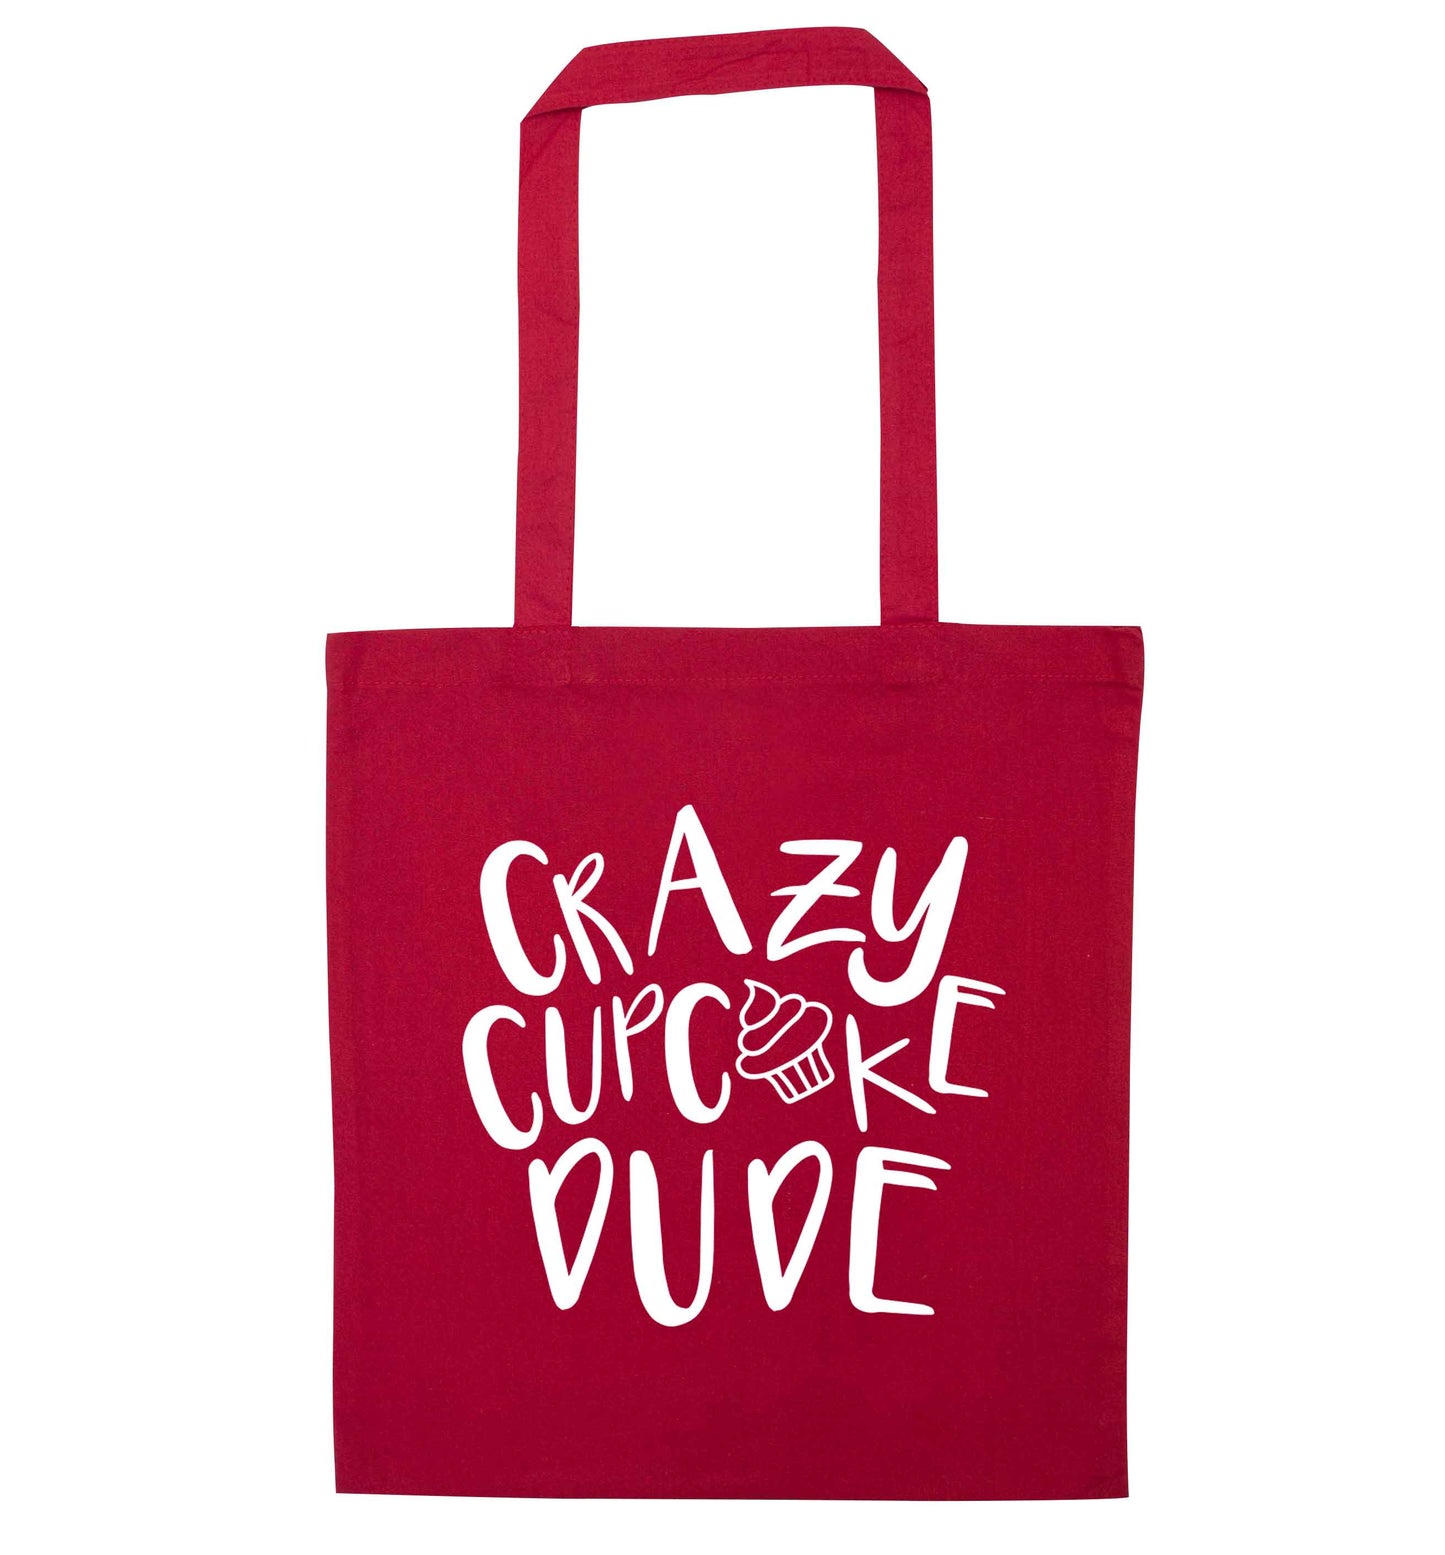 Crazy cupcake dude red tote bag